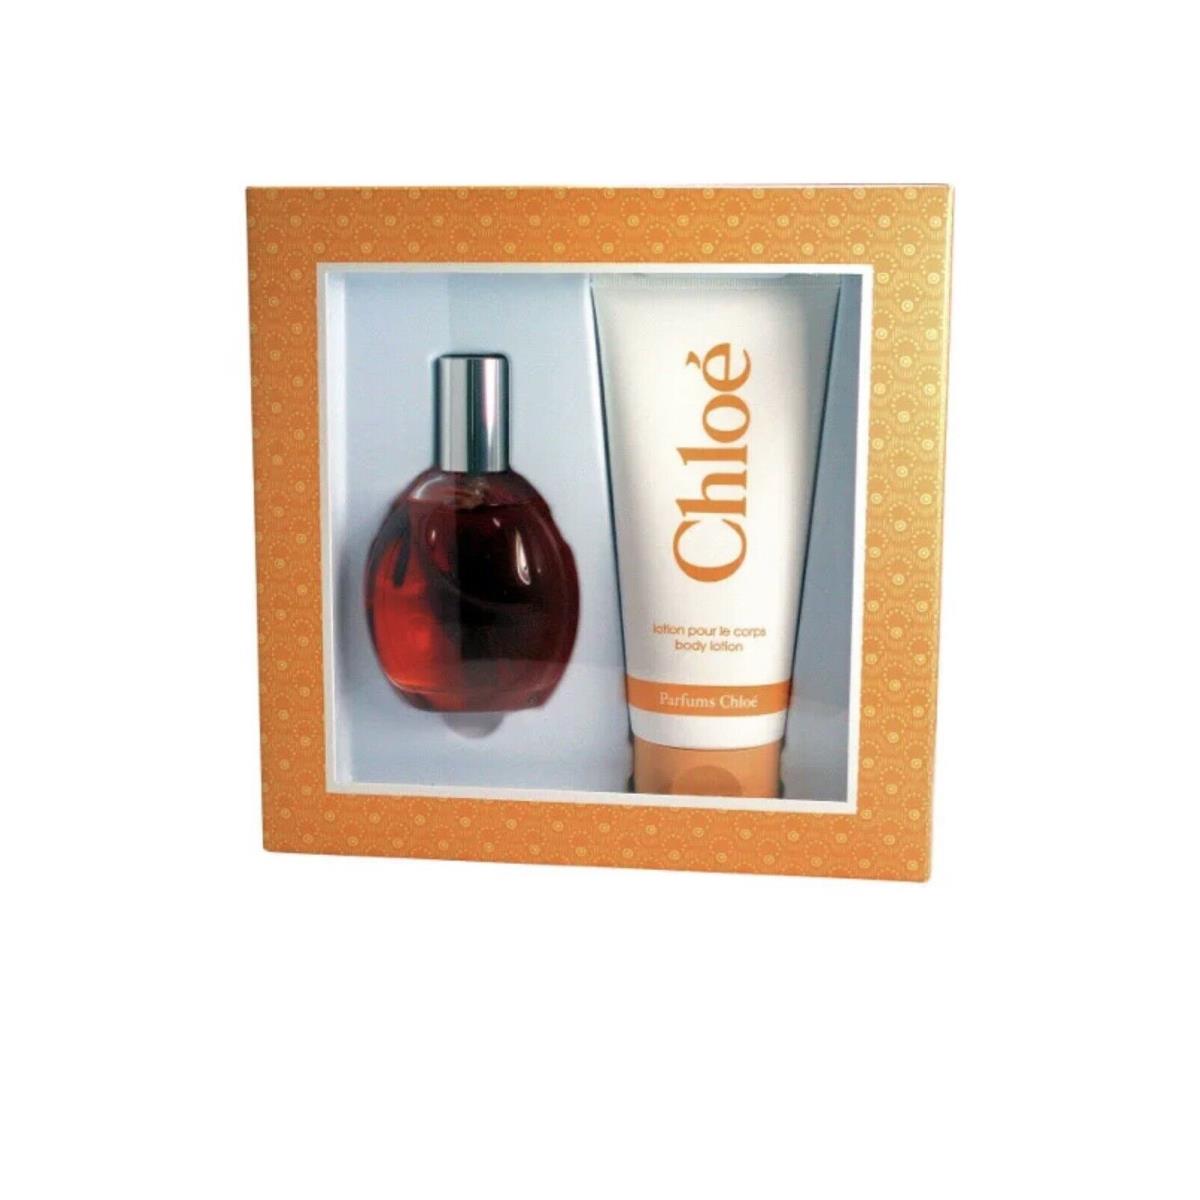 Chloe by Chloe For Women Gift Set: 3 oz Edt Spray + 6.8 oz Body Lotion